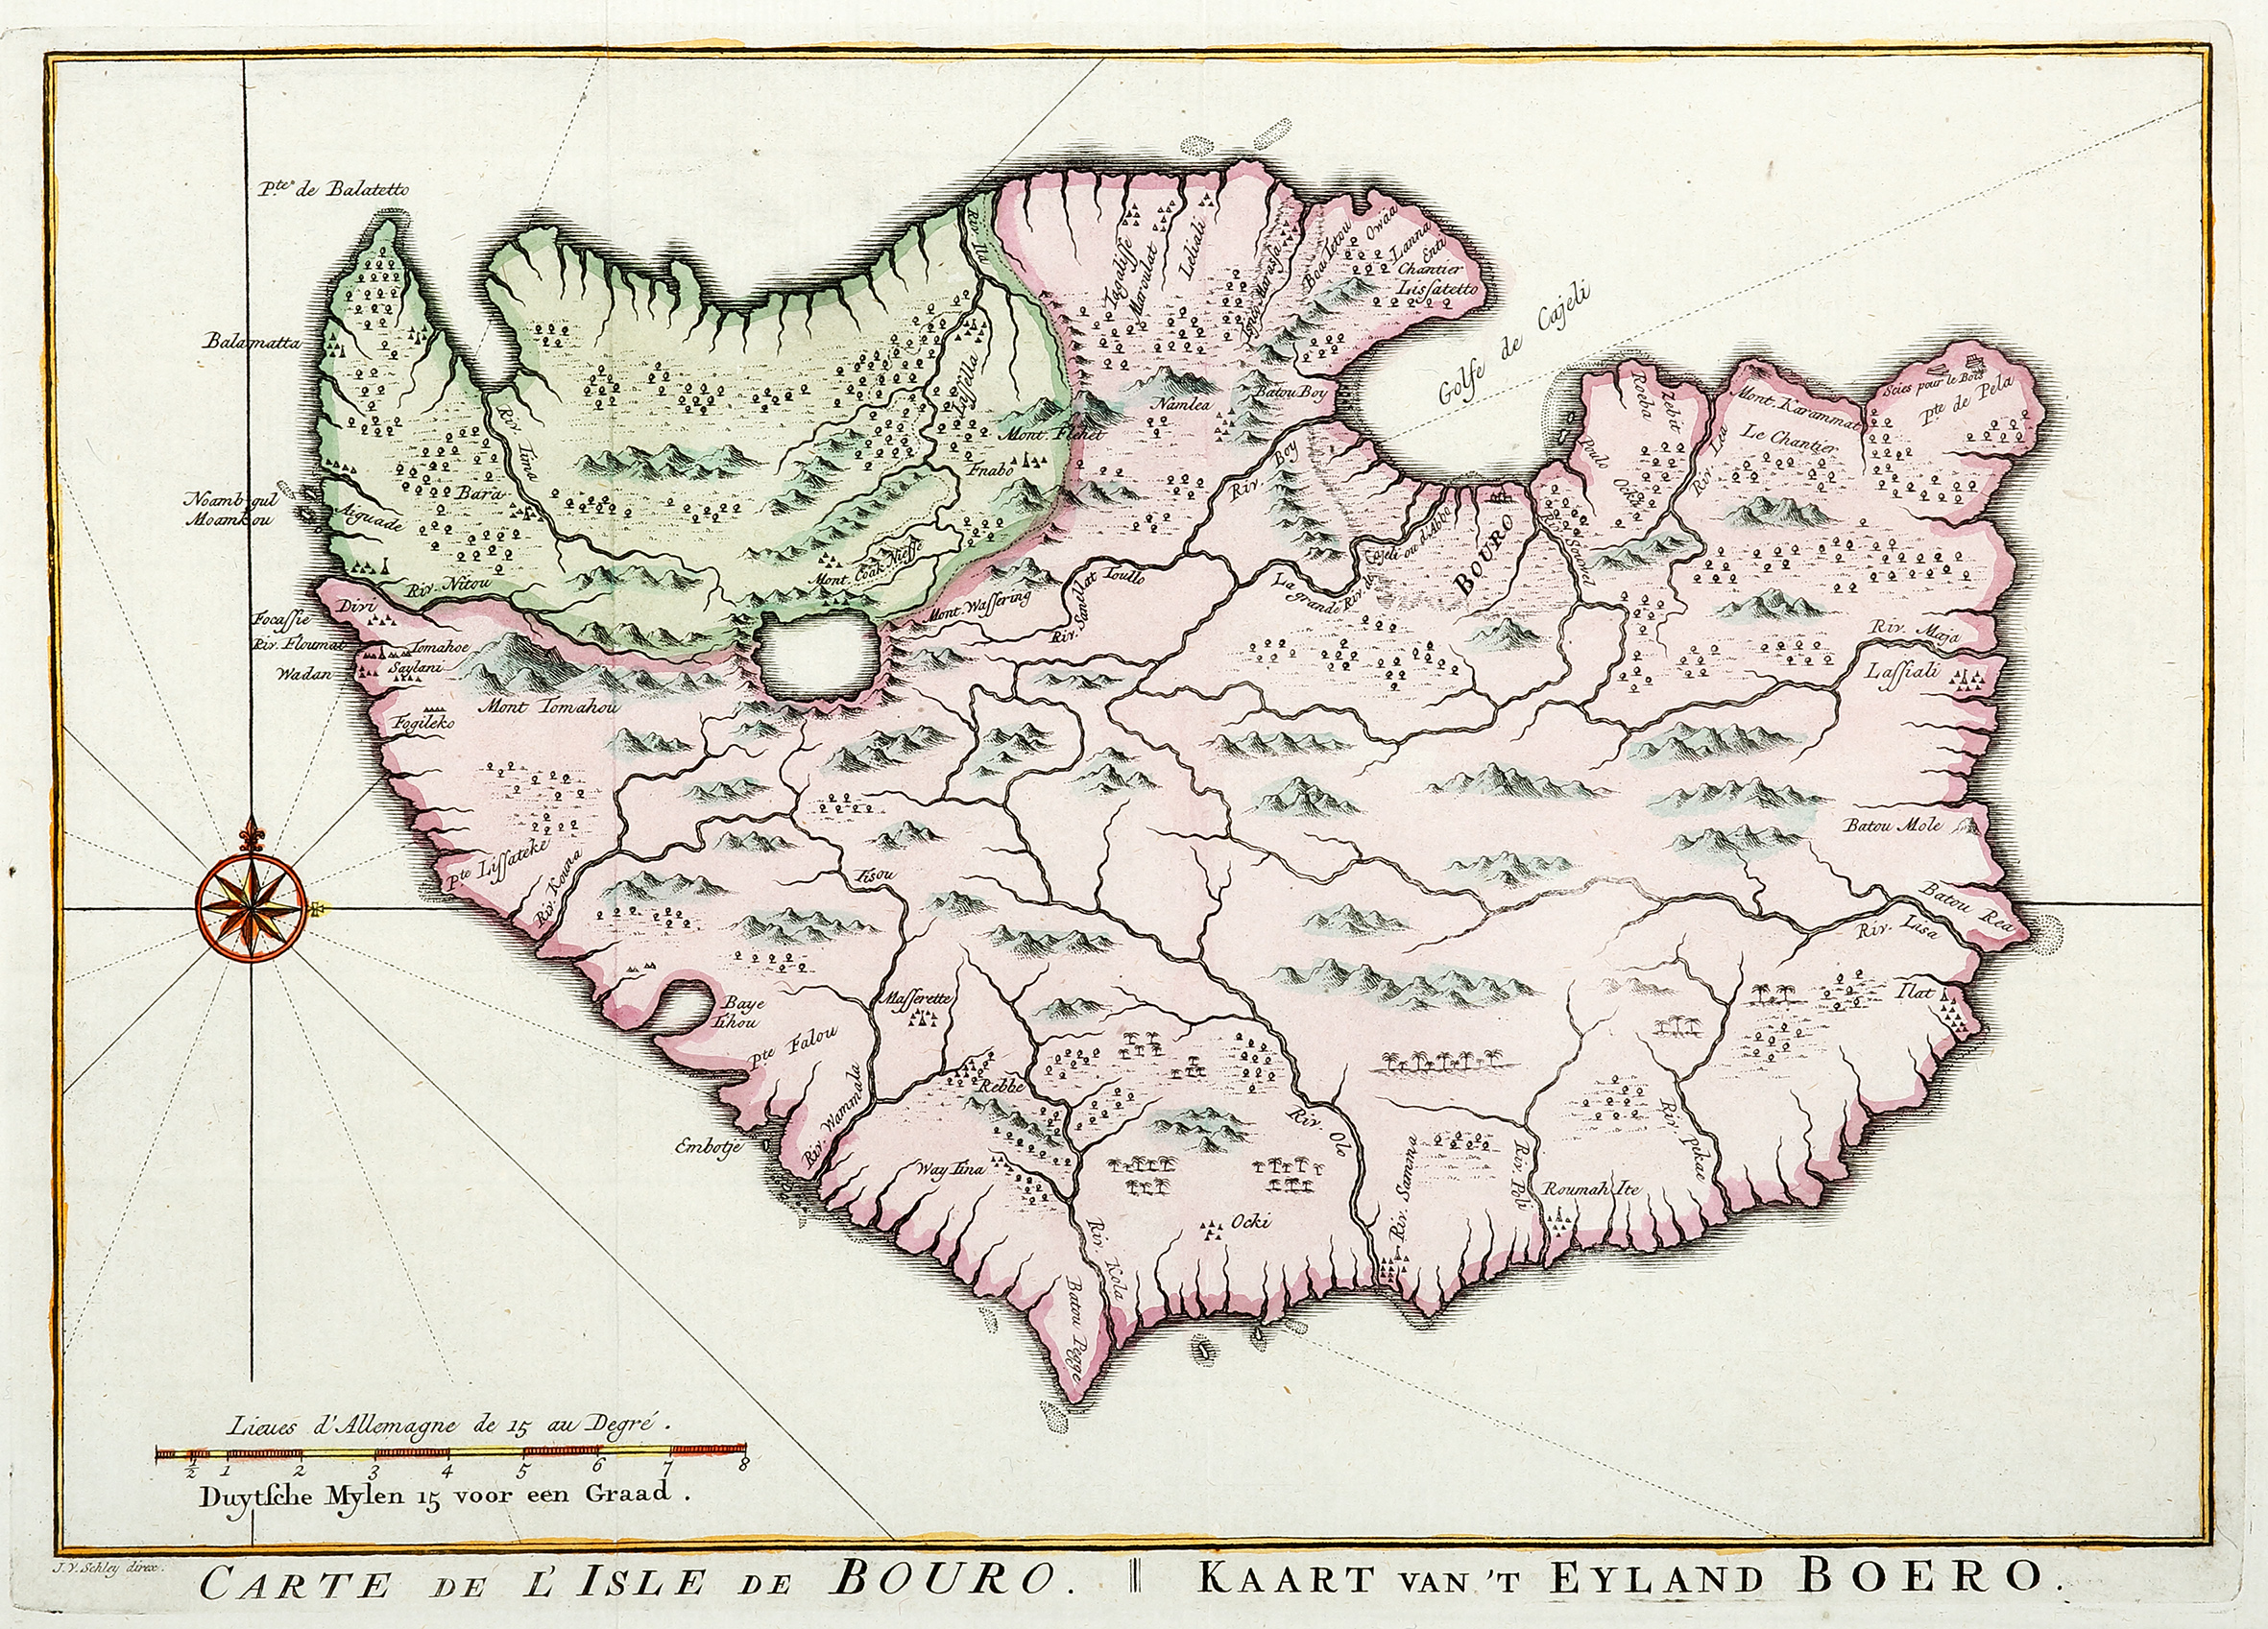 Carte de L'Isle de Bouro. Kaart van t Eyland Borero. - Antique Print from 1764